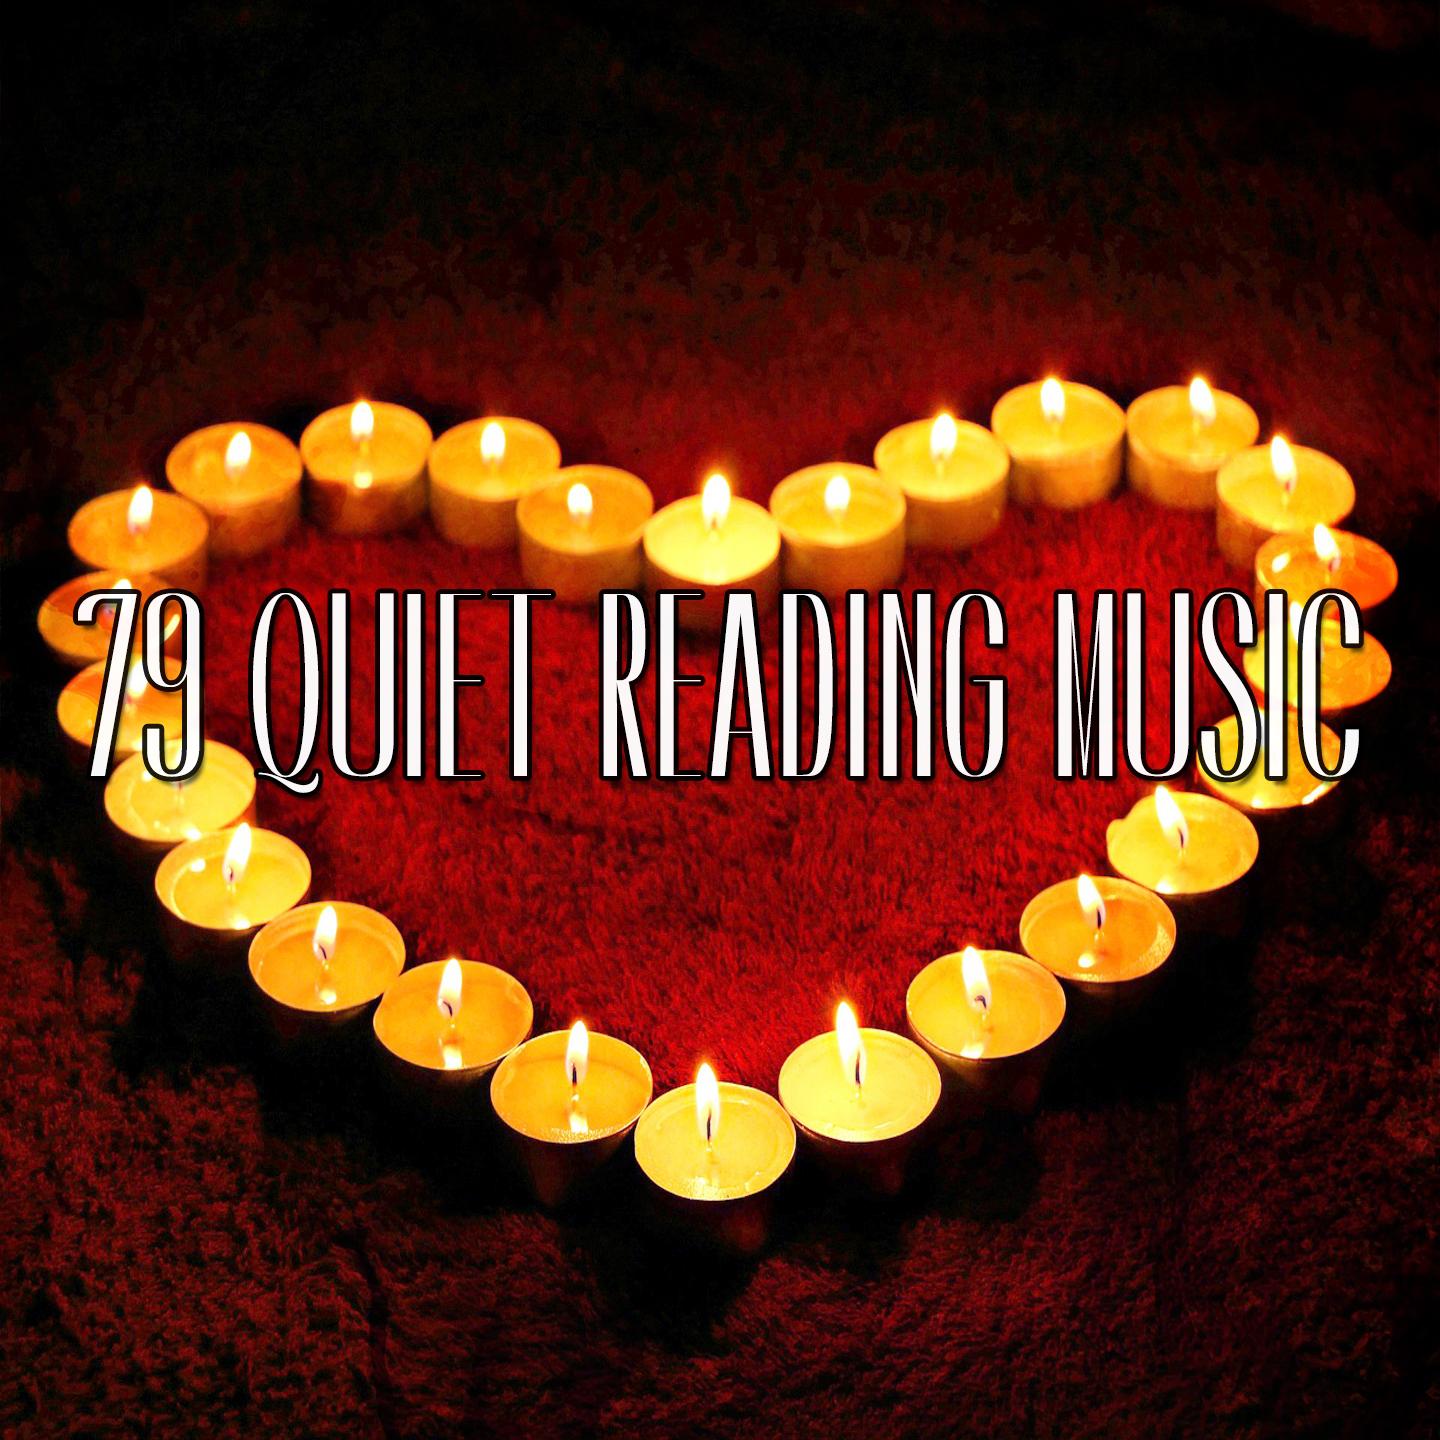 79 Quiet Reading Music